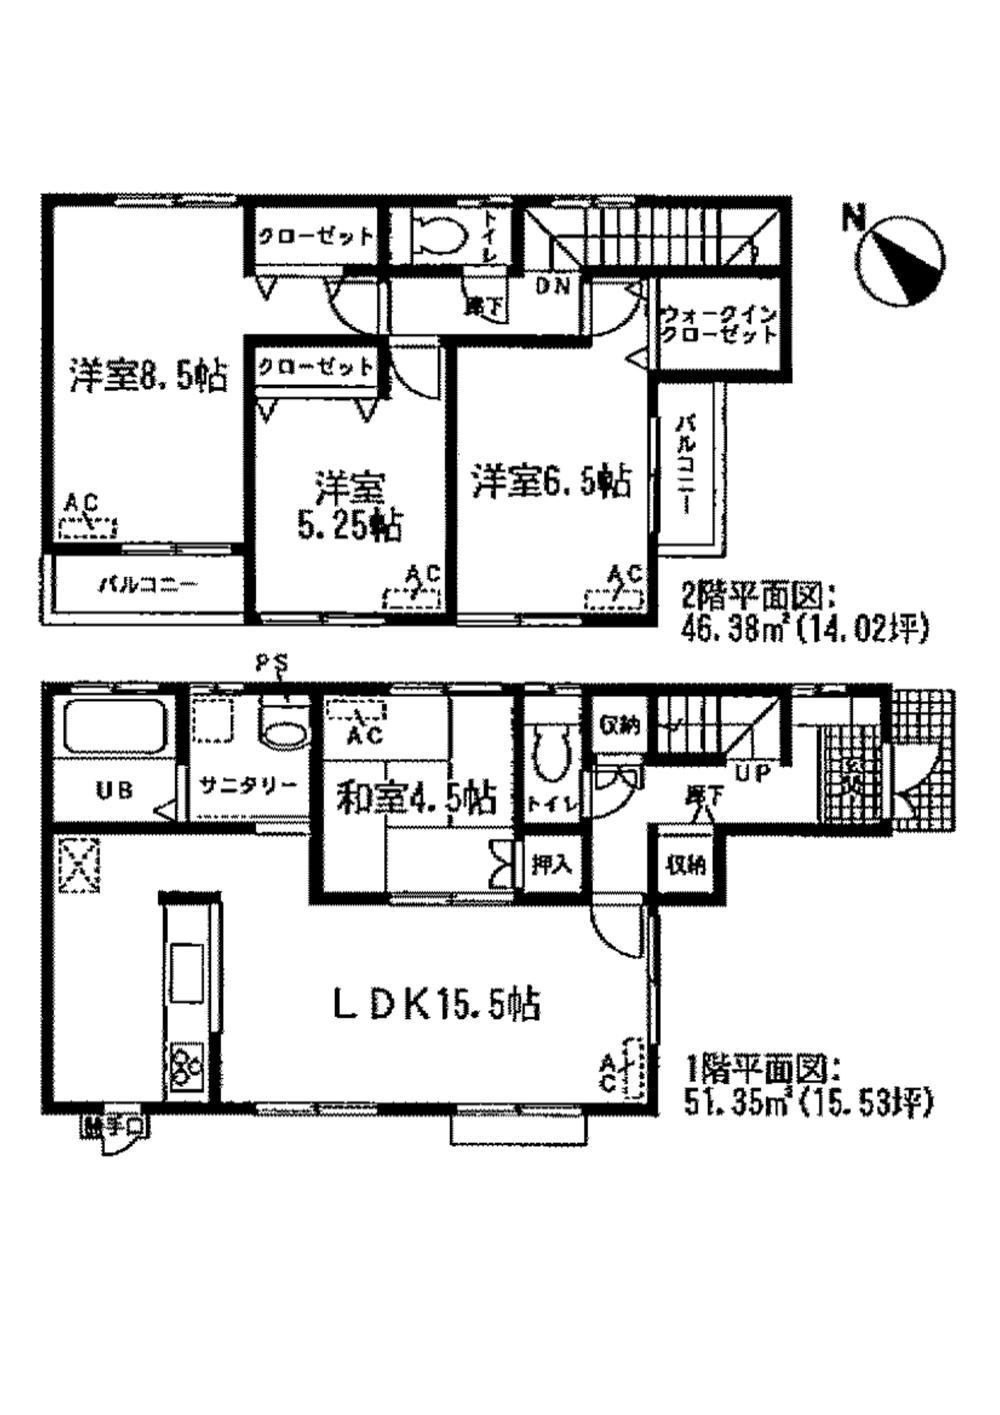 Floor plan. 28.8 million yen, 4LDK, Land area 95.01 sq m , Building area 97.73 sq m